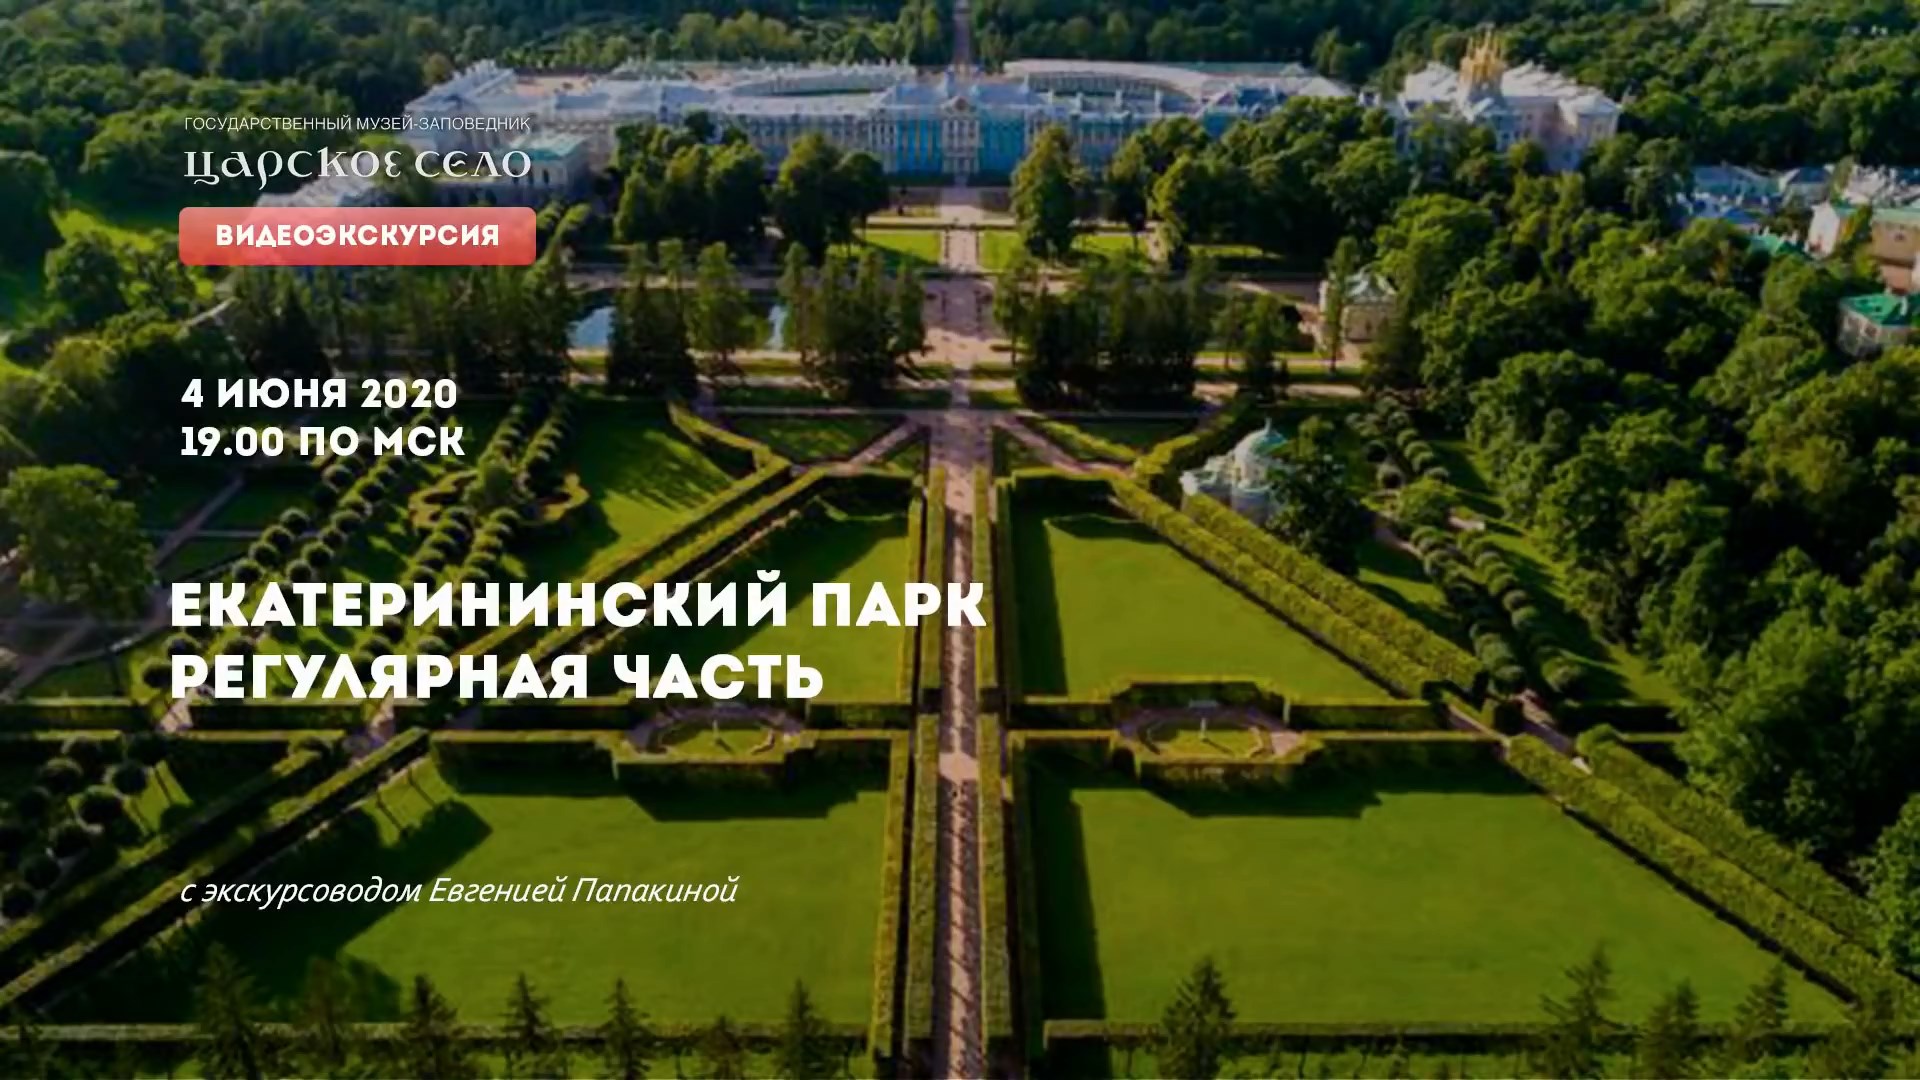 Екатерининский парк. Часть 1: Регулярная часть | Онлайн-экскурсия (4 июня 2020)